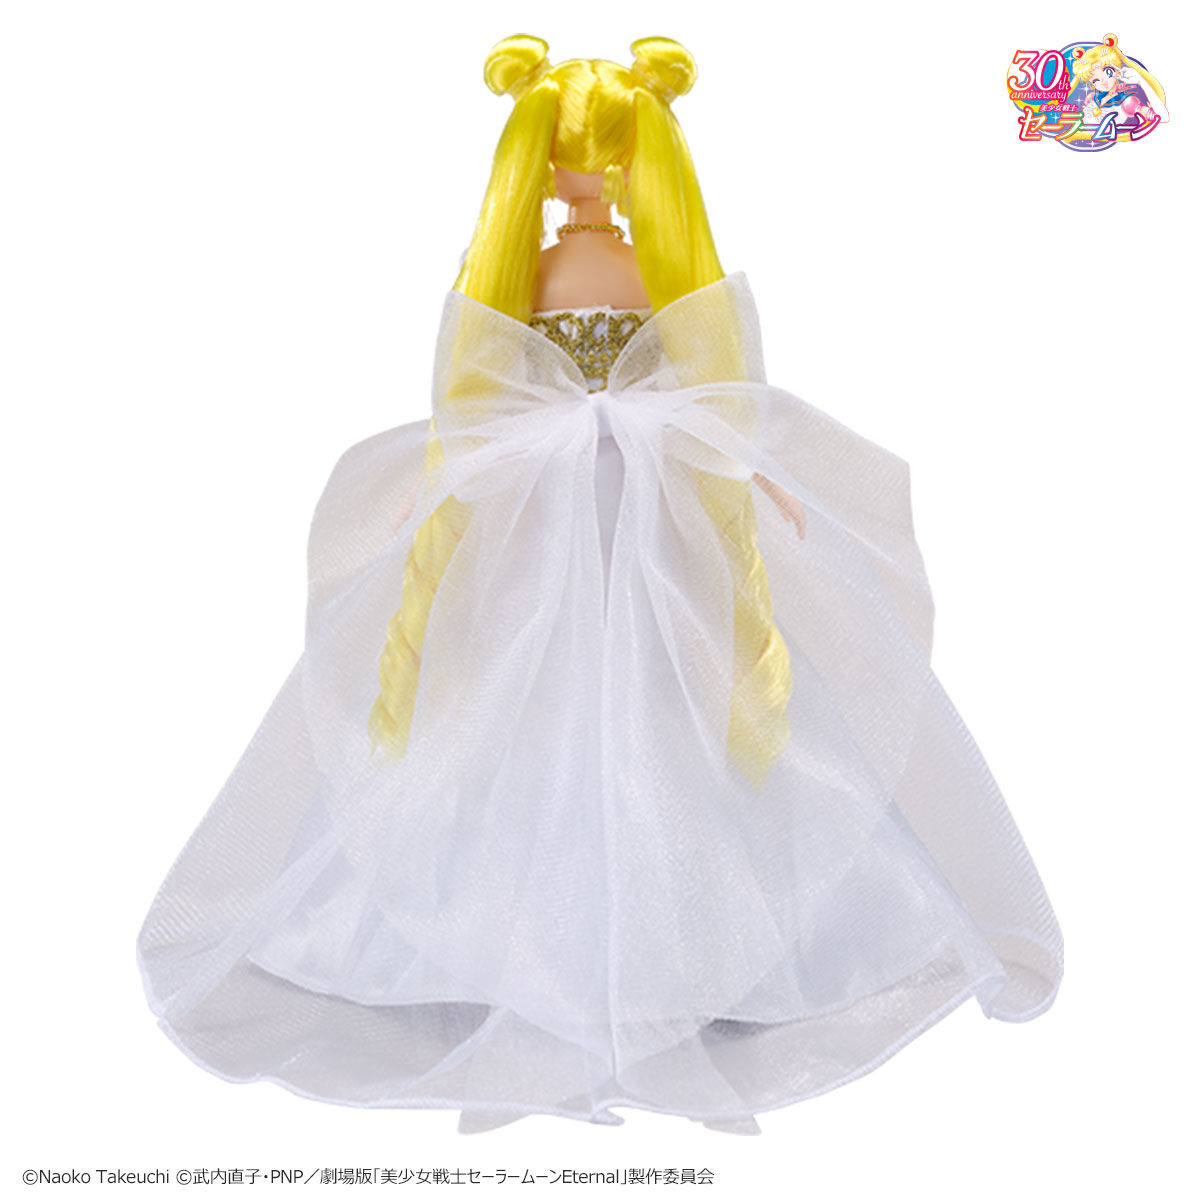 【新商品】StyleDoll Super Sailor Moon【再販】&セレニティ セル画